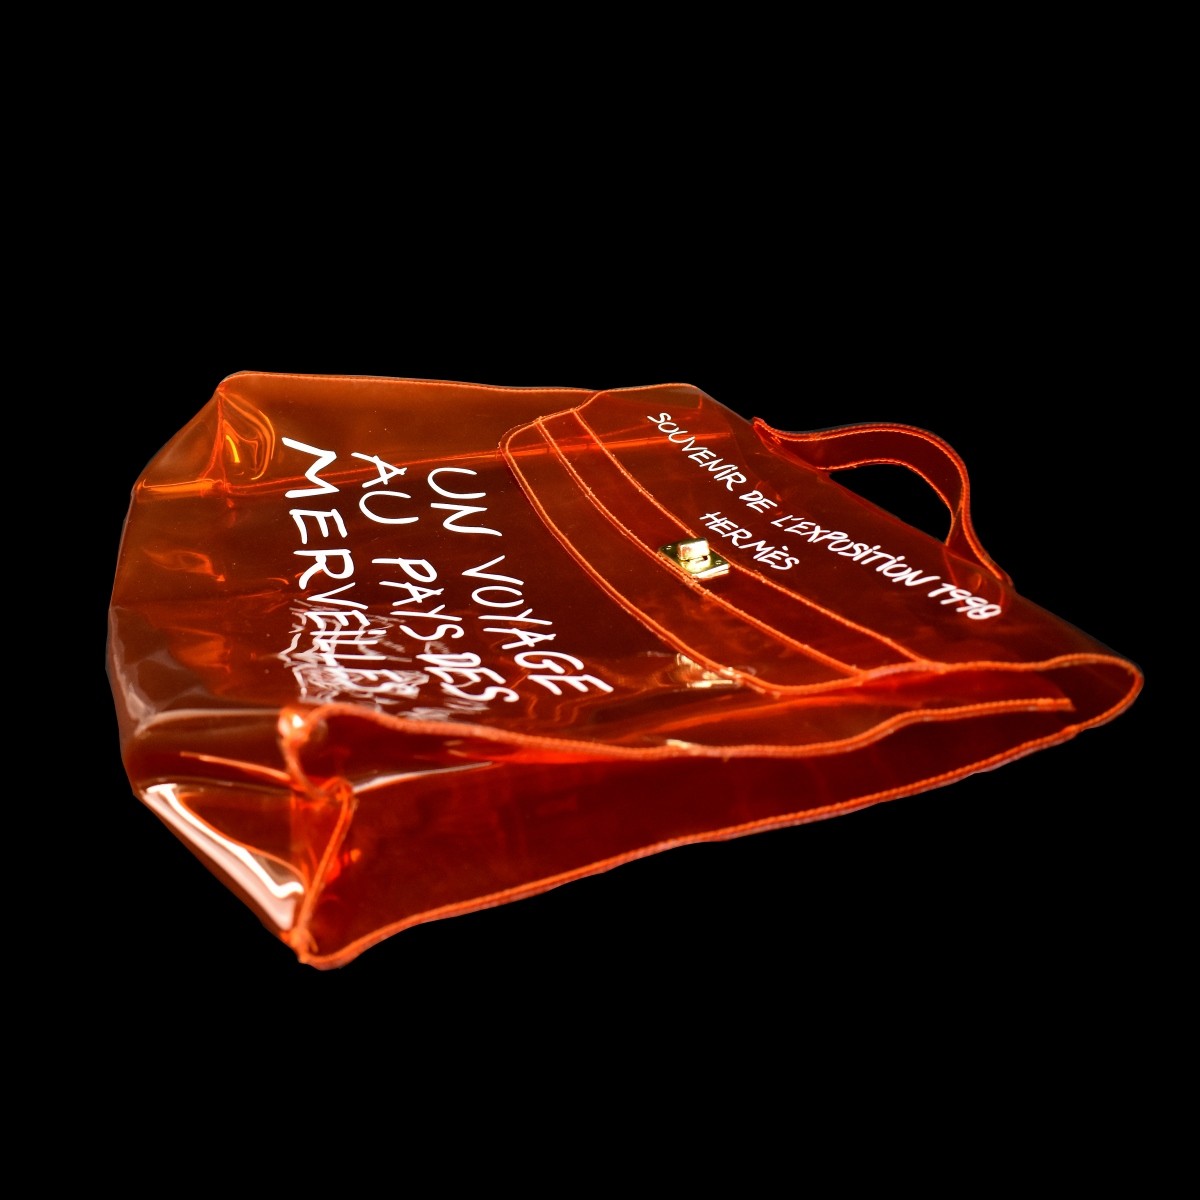 Hermes Souvenir De L'Exposition 1998 Tote Bag